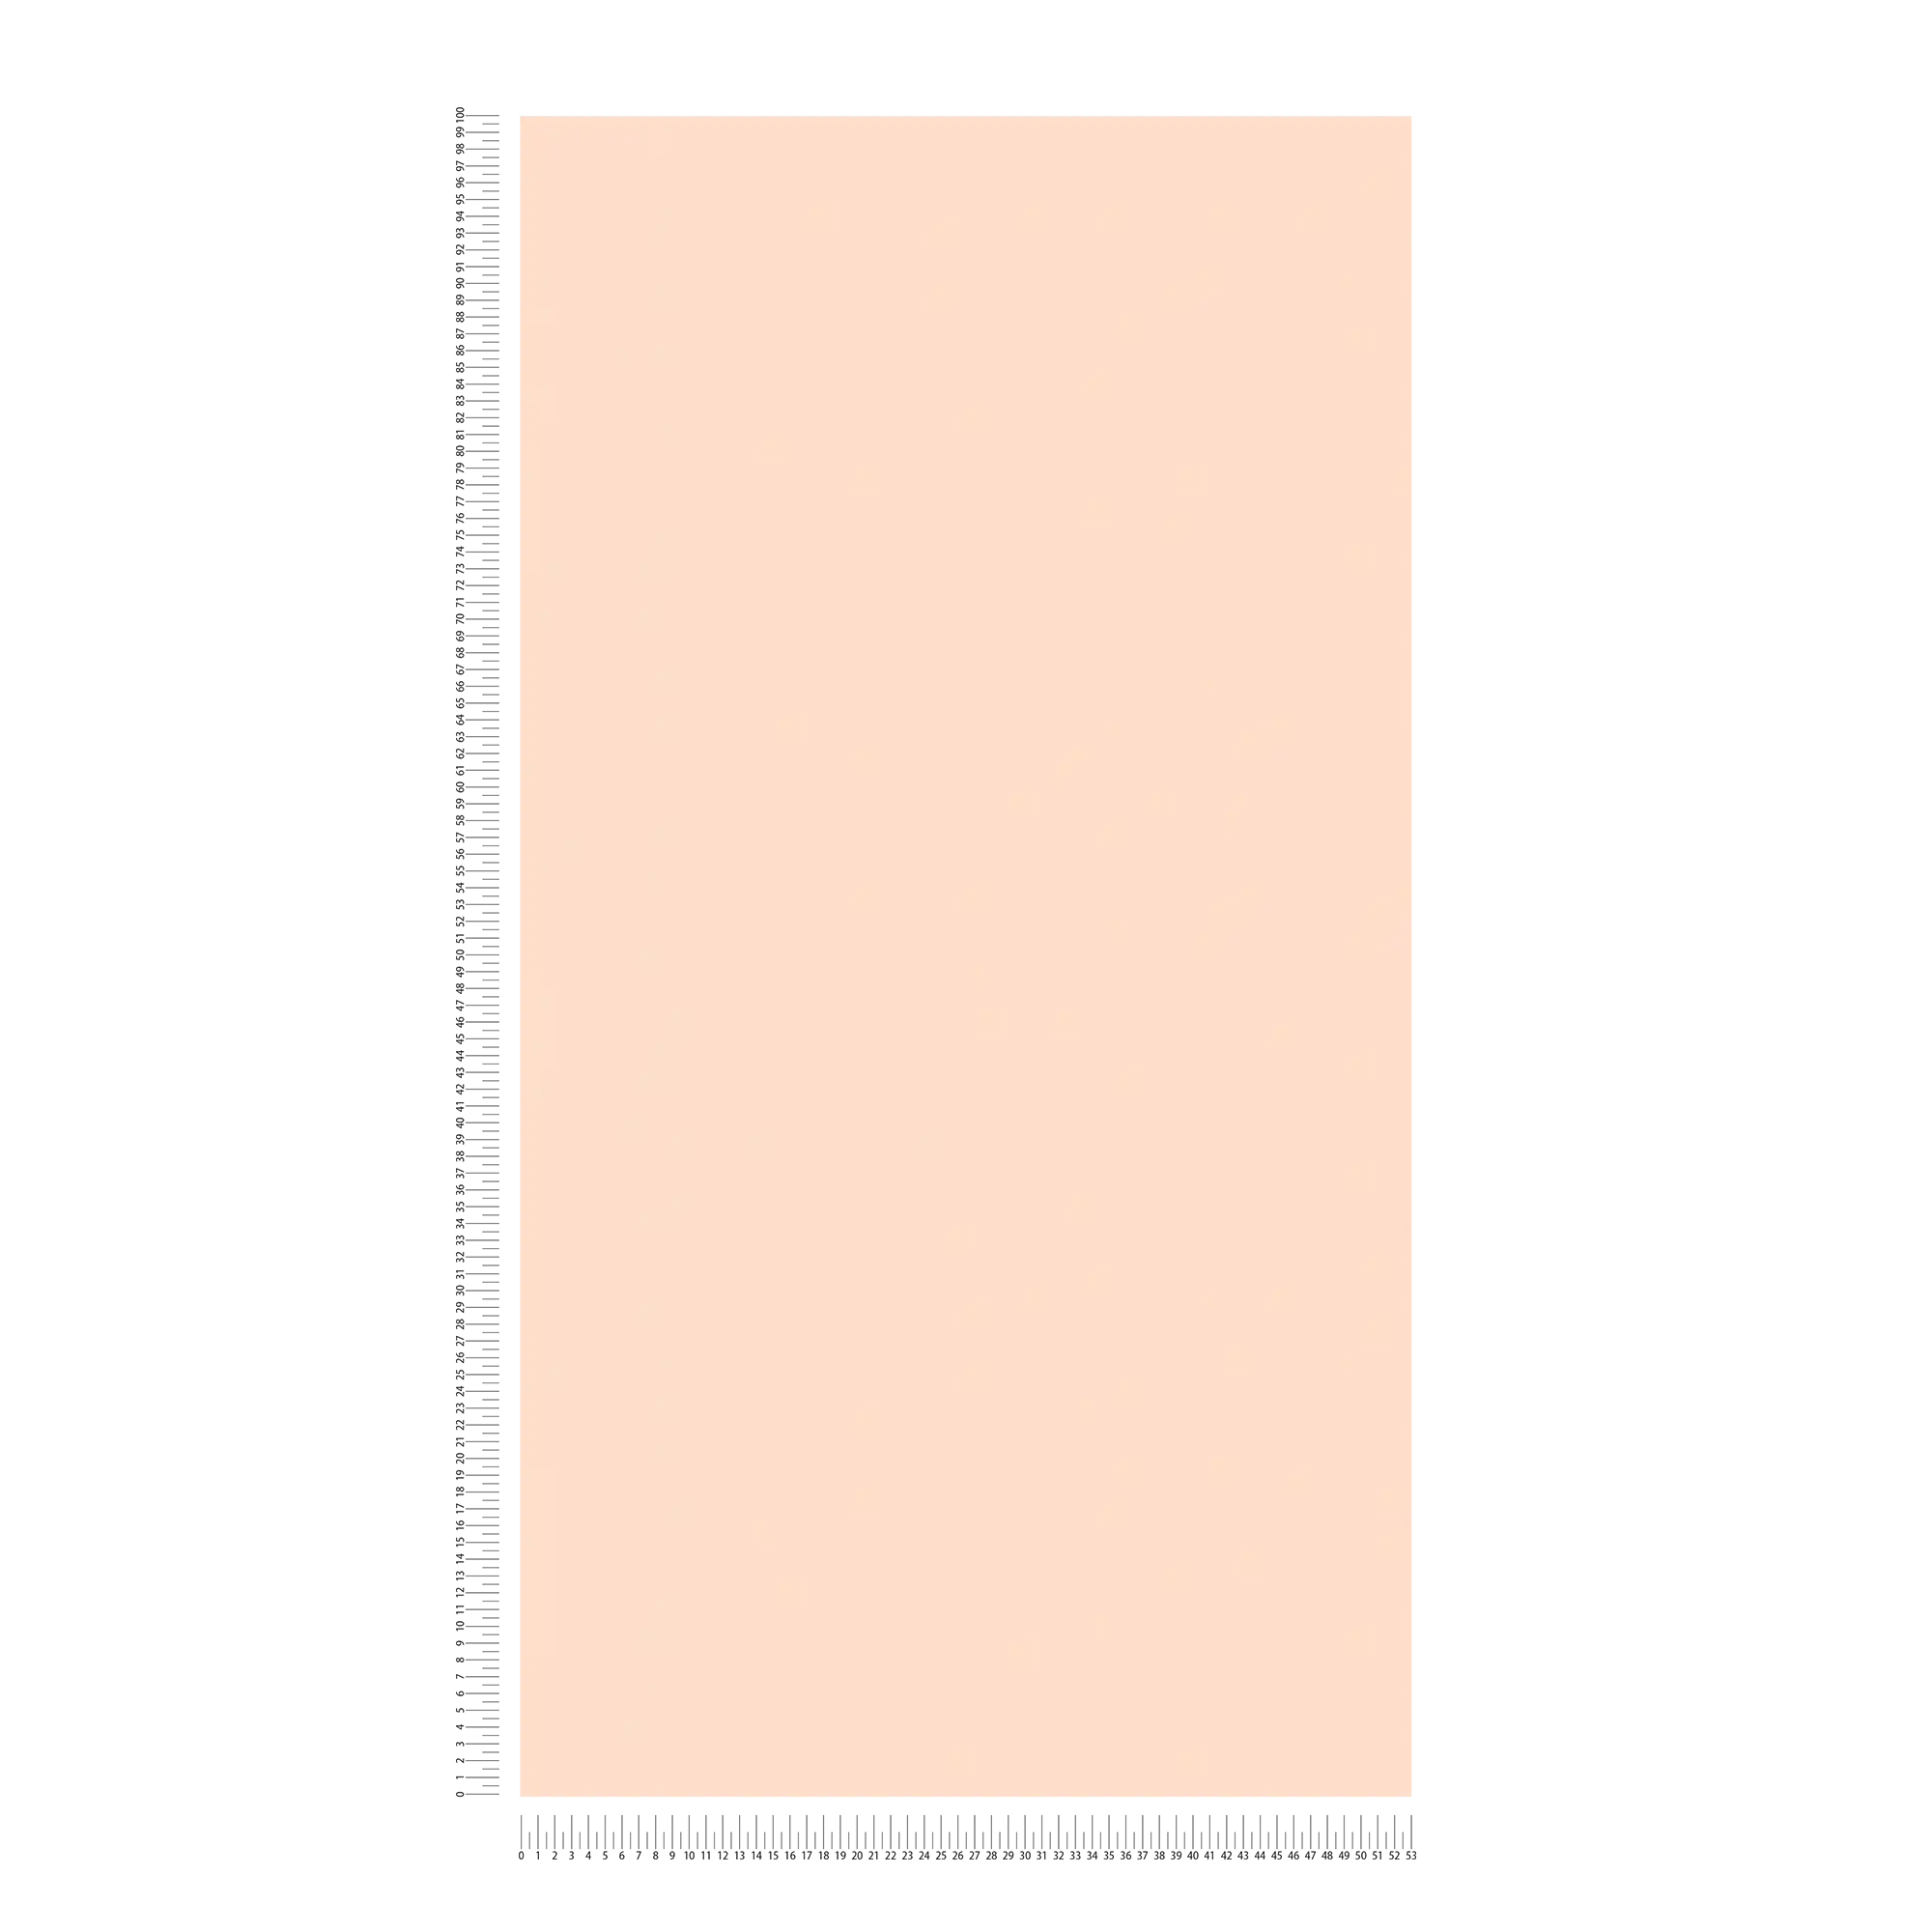             Papel pintado liso con superficie mate - crema, rosa
        